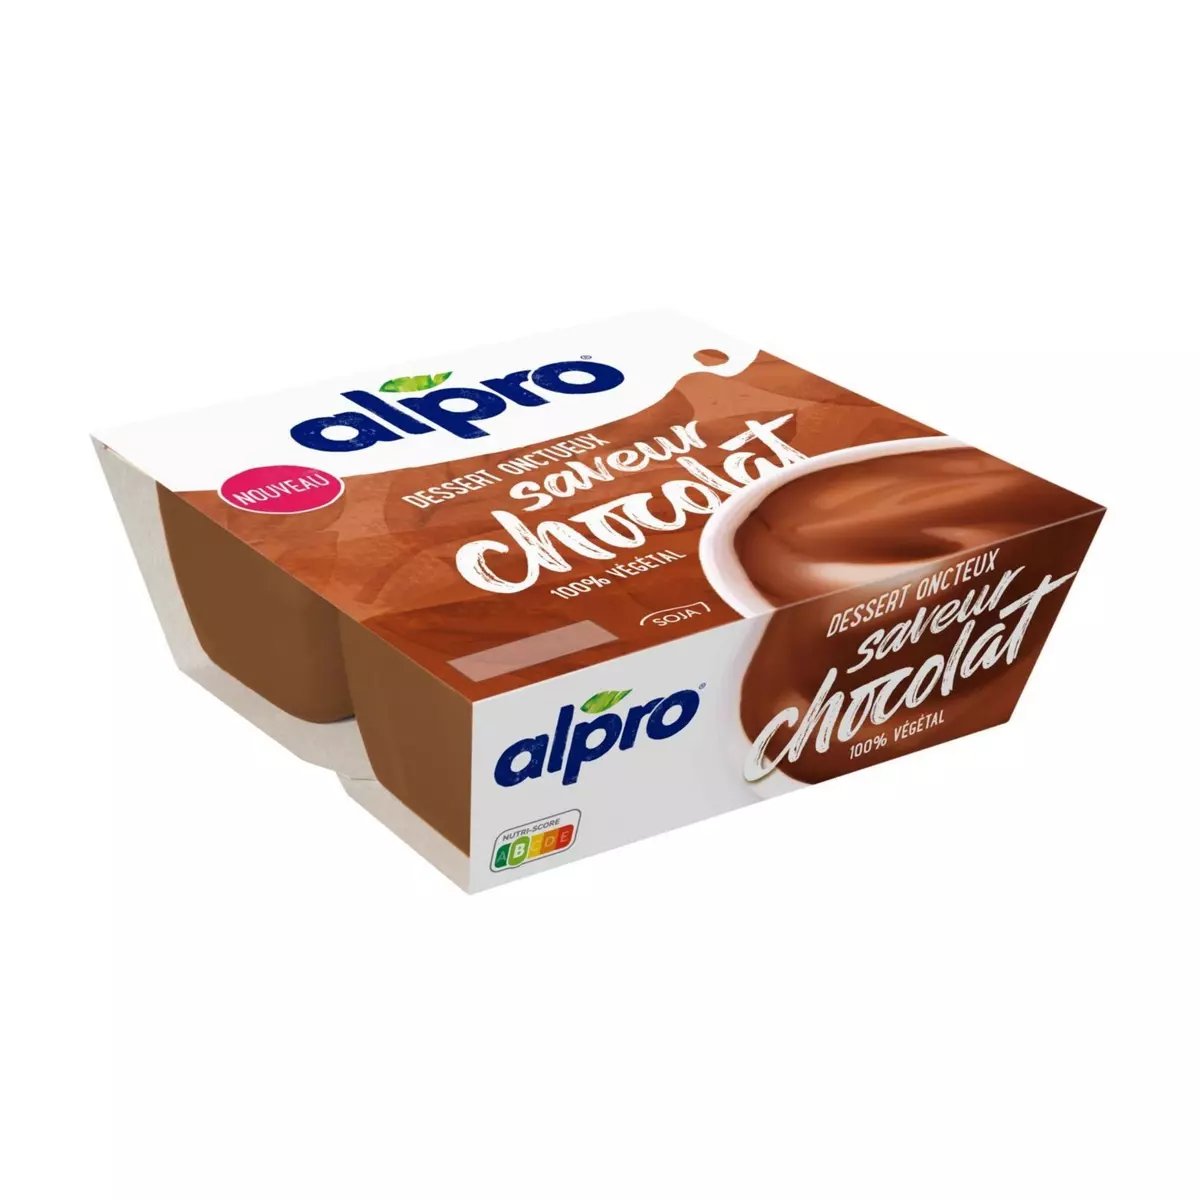 ALPRO Dessert végétal au soja saveur chocolat 4x115g